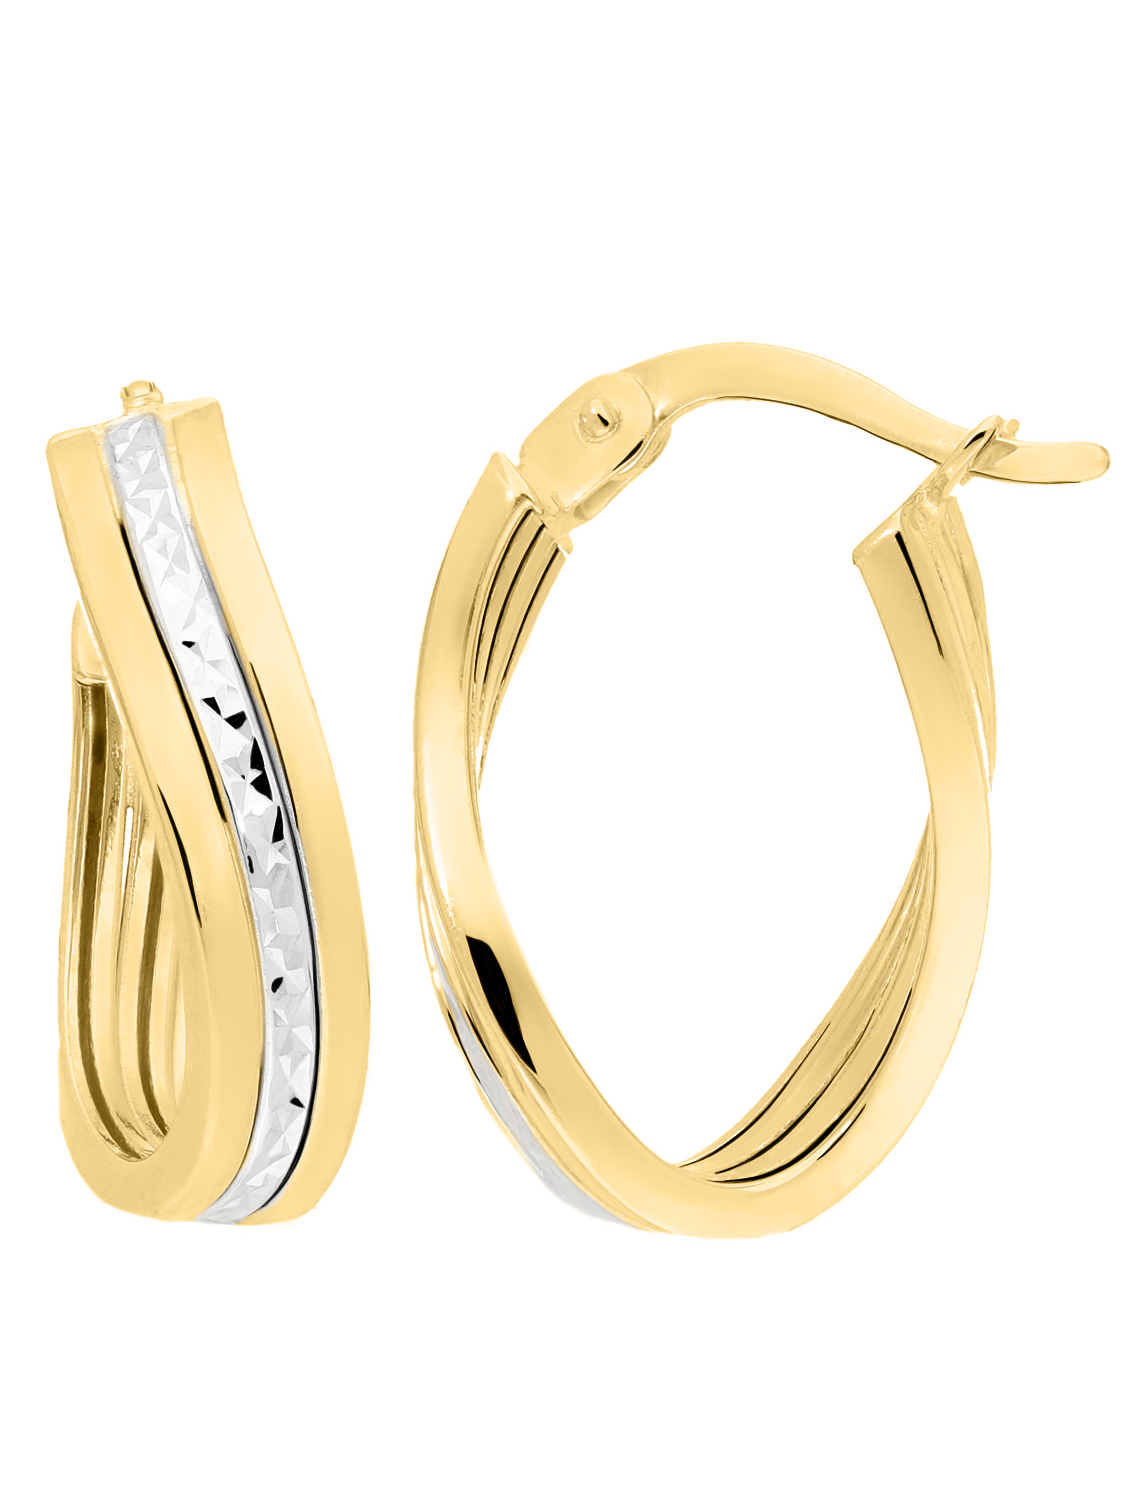 Damencreolen aus echtem Gelbgold & Weißgold mit Diamantierung - Eartwist | Detailansicht